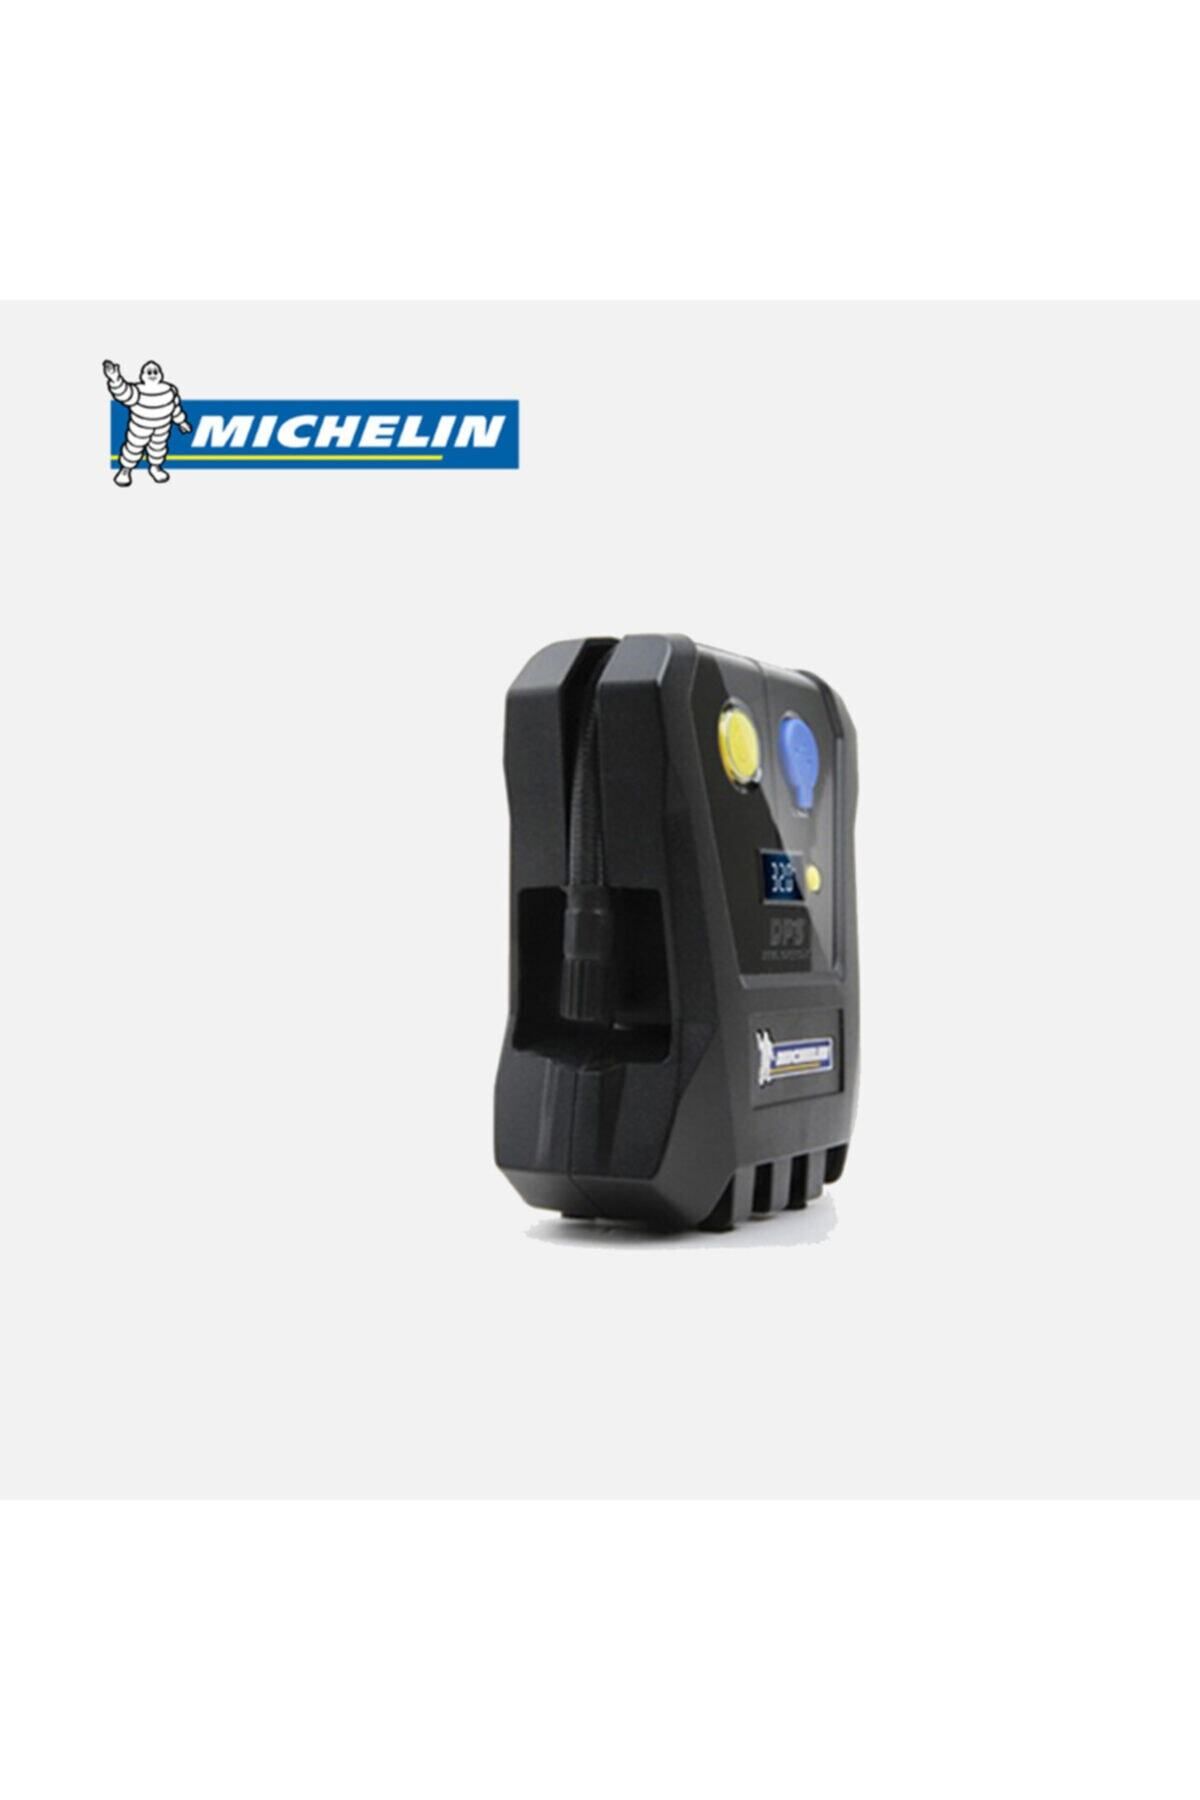 Michelin Mc12264 12v 120psı Dijital Basınç Göstergeli Hava Pompası